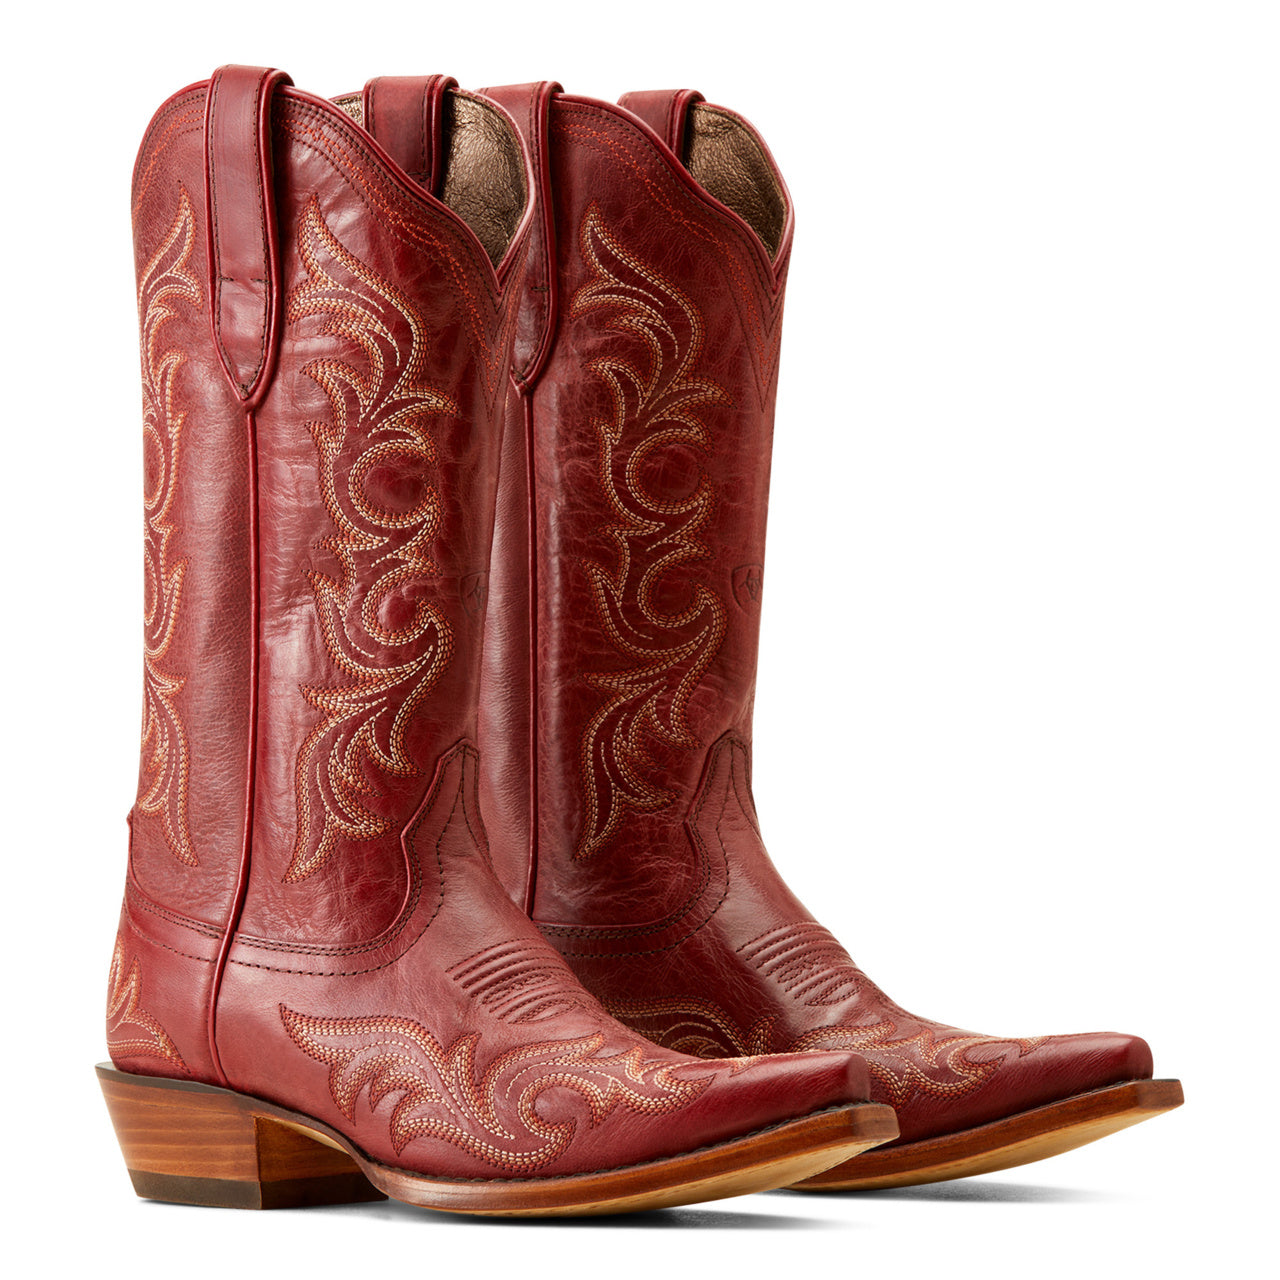 Ariat Ladies Hazen Ripe Serrano Western Boots 10050893